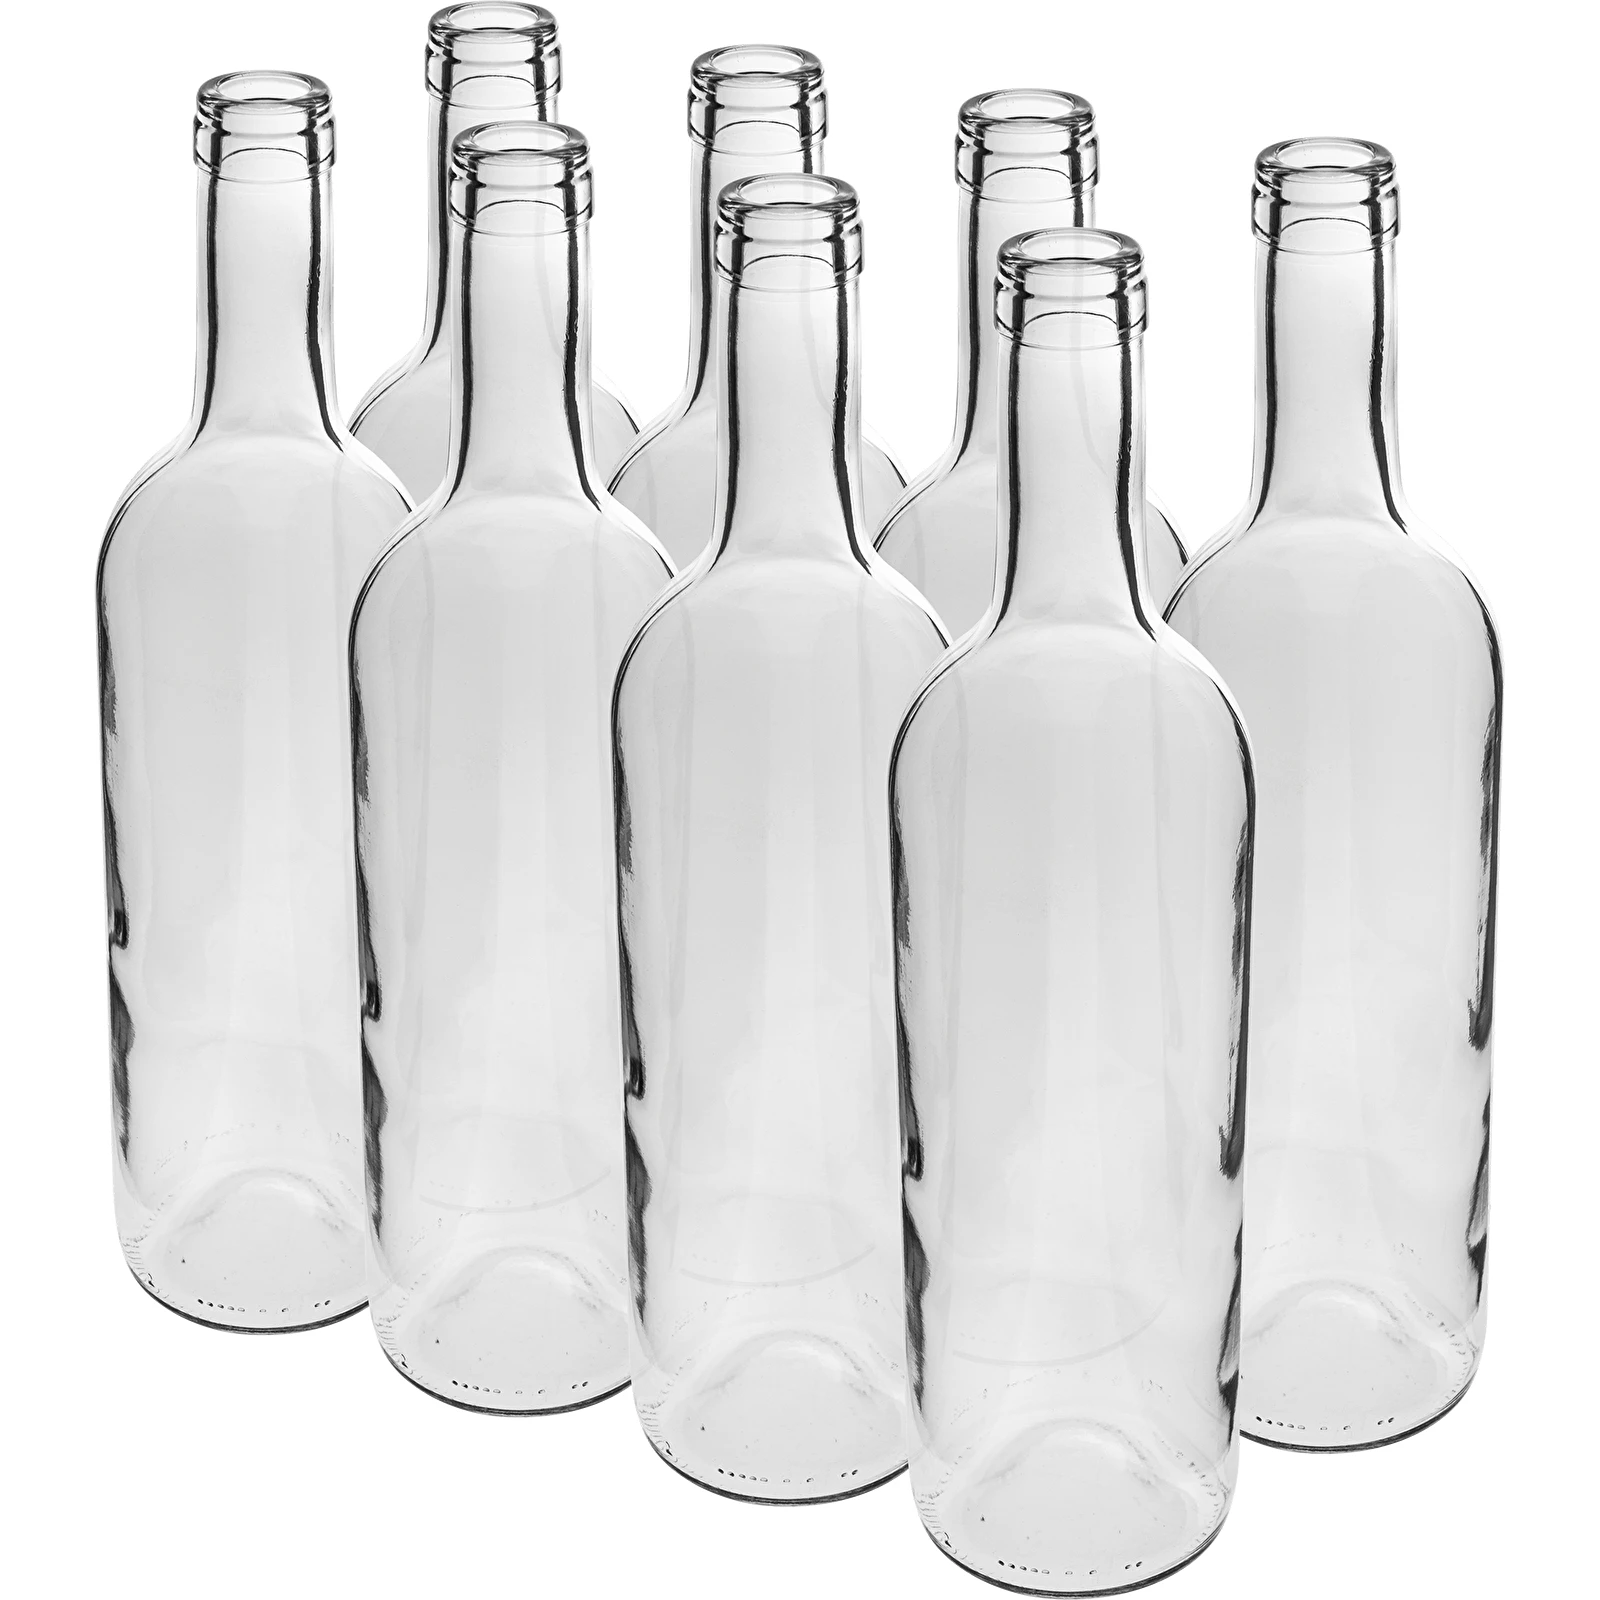 Weinflasche 0,75 L weiß – Verpackung von 8 St. (flaschen) - symbol:631461